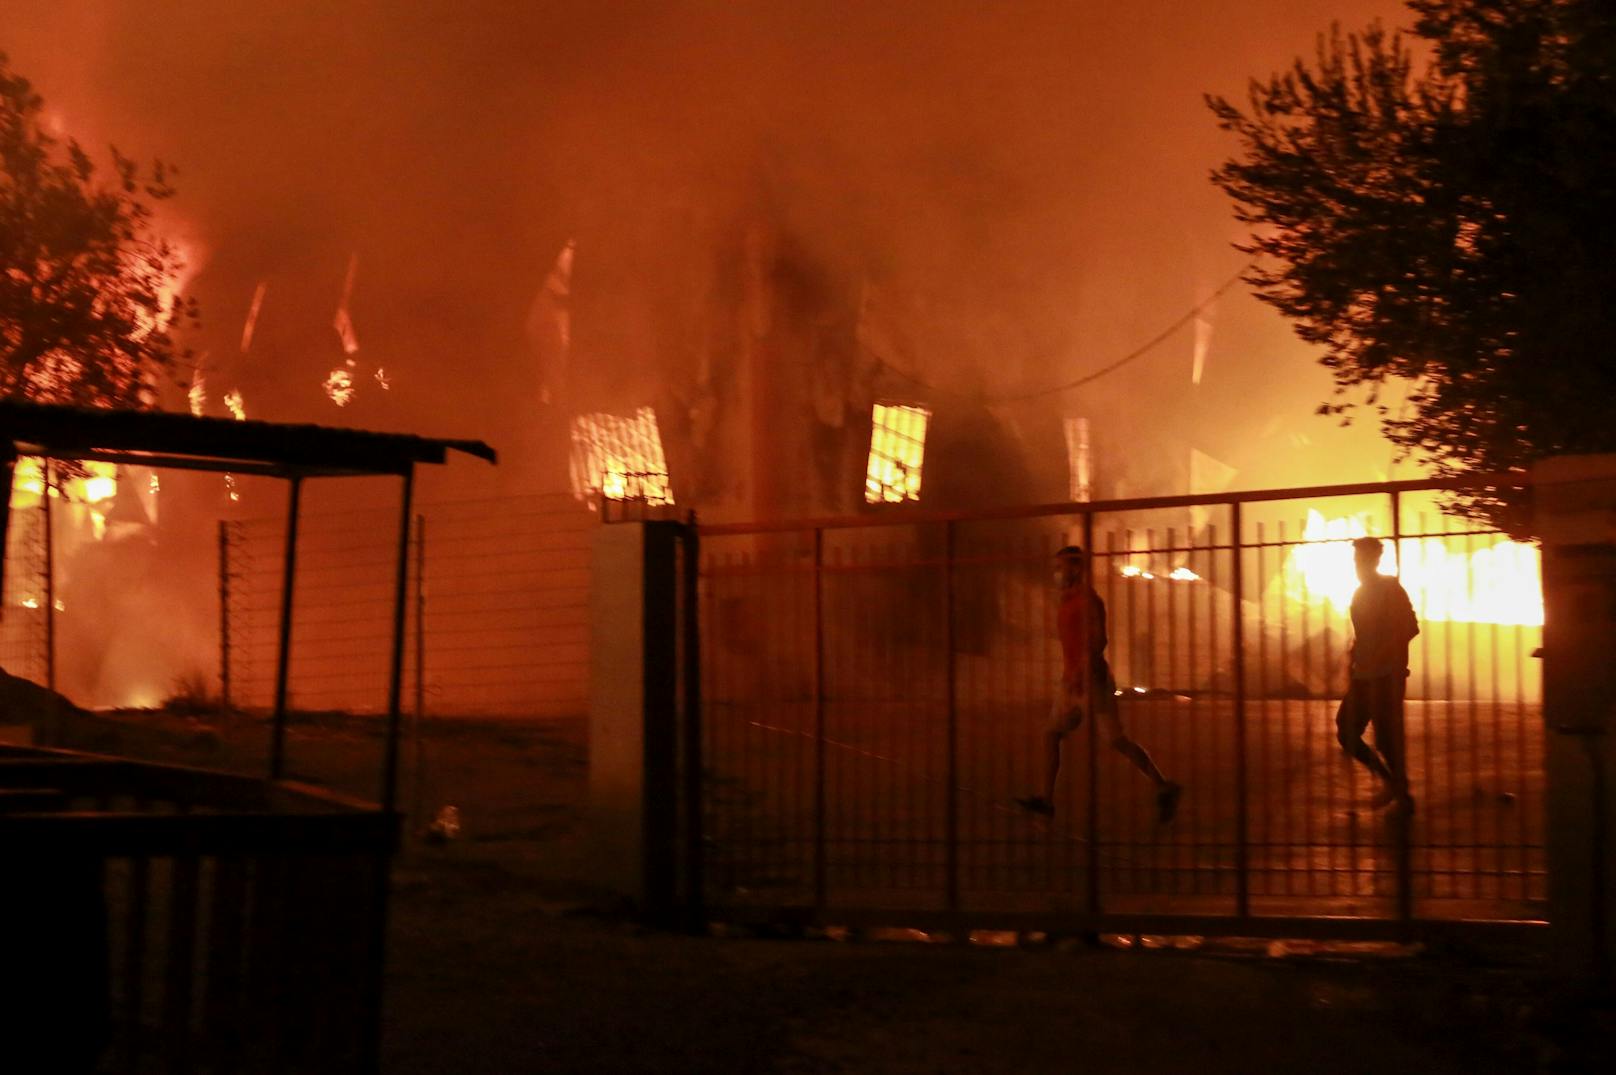 Flüchtlinge evakuiert: Im Flüchtlingslager Moria auf Lesbos sind mehrere Brände ausgebrochen.